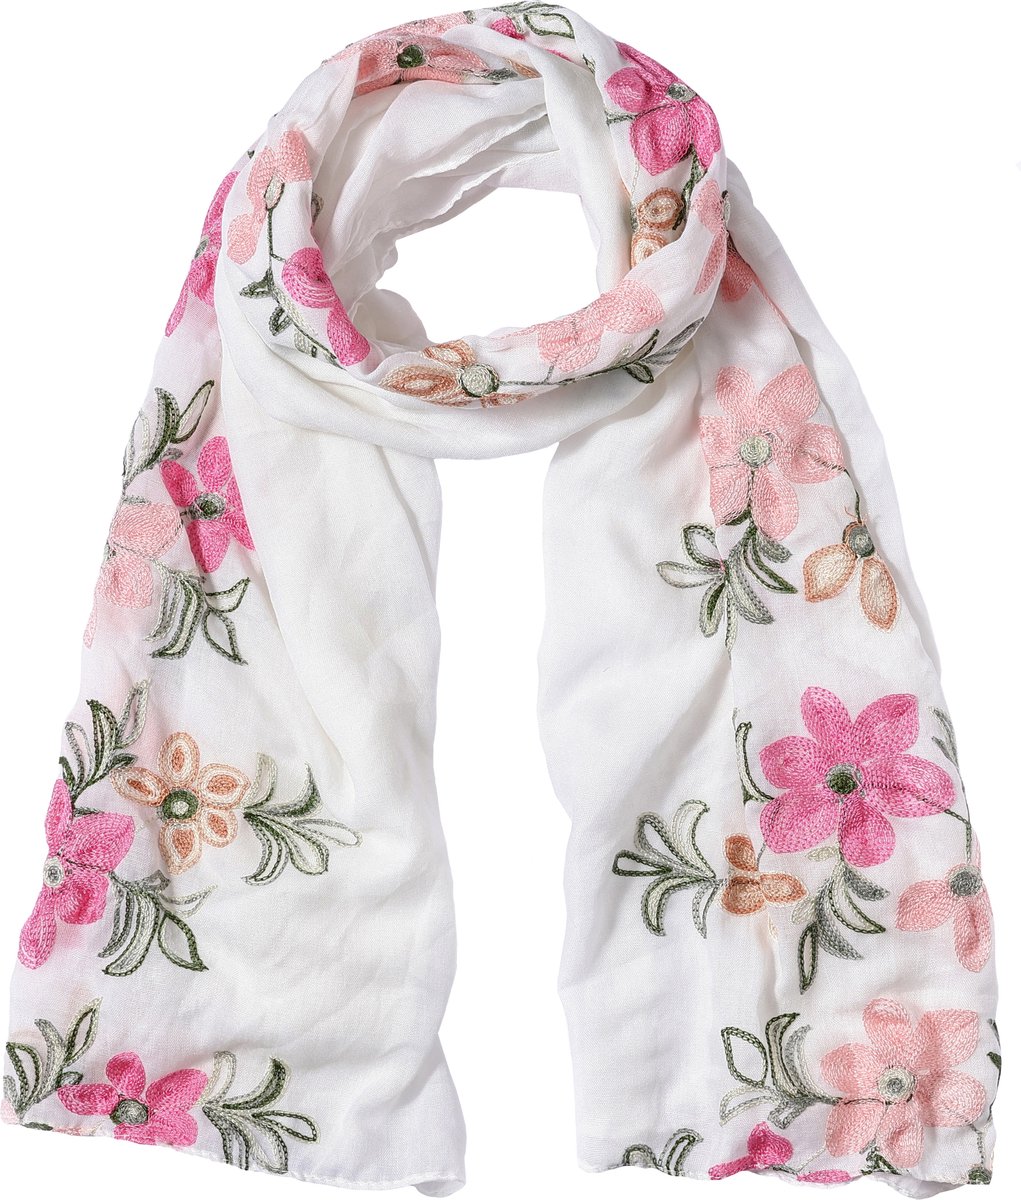 Nouka Wit & Roze Multicolor Dames Sjaal – Bloemenprint - Dunne & Lichte Sjaal - Luchtige Shawl – Lente / Zomer – 90 x 180 cm